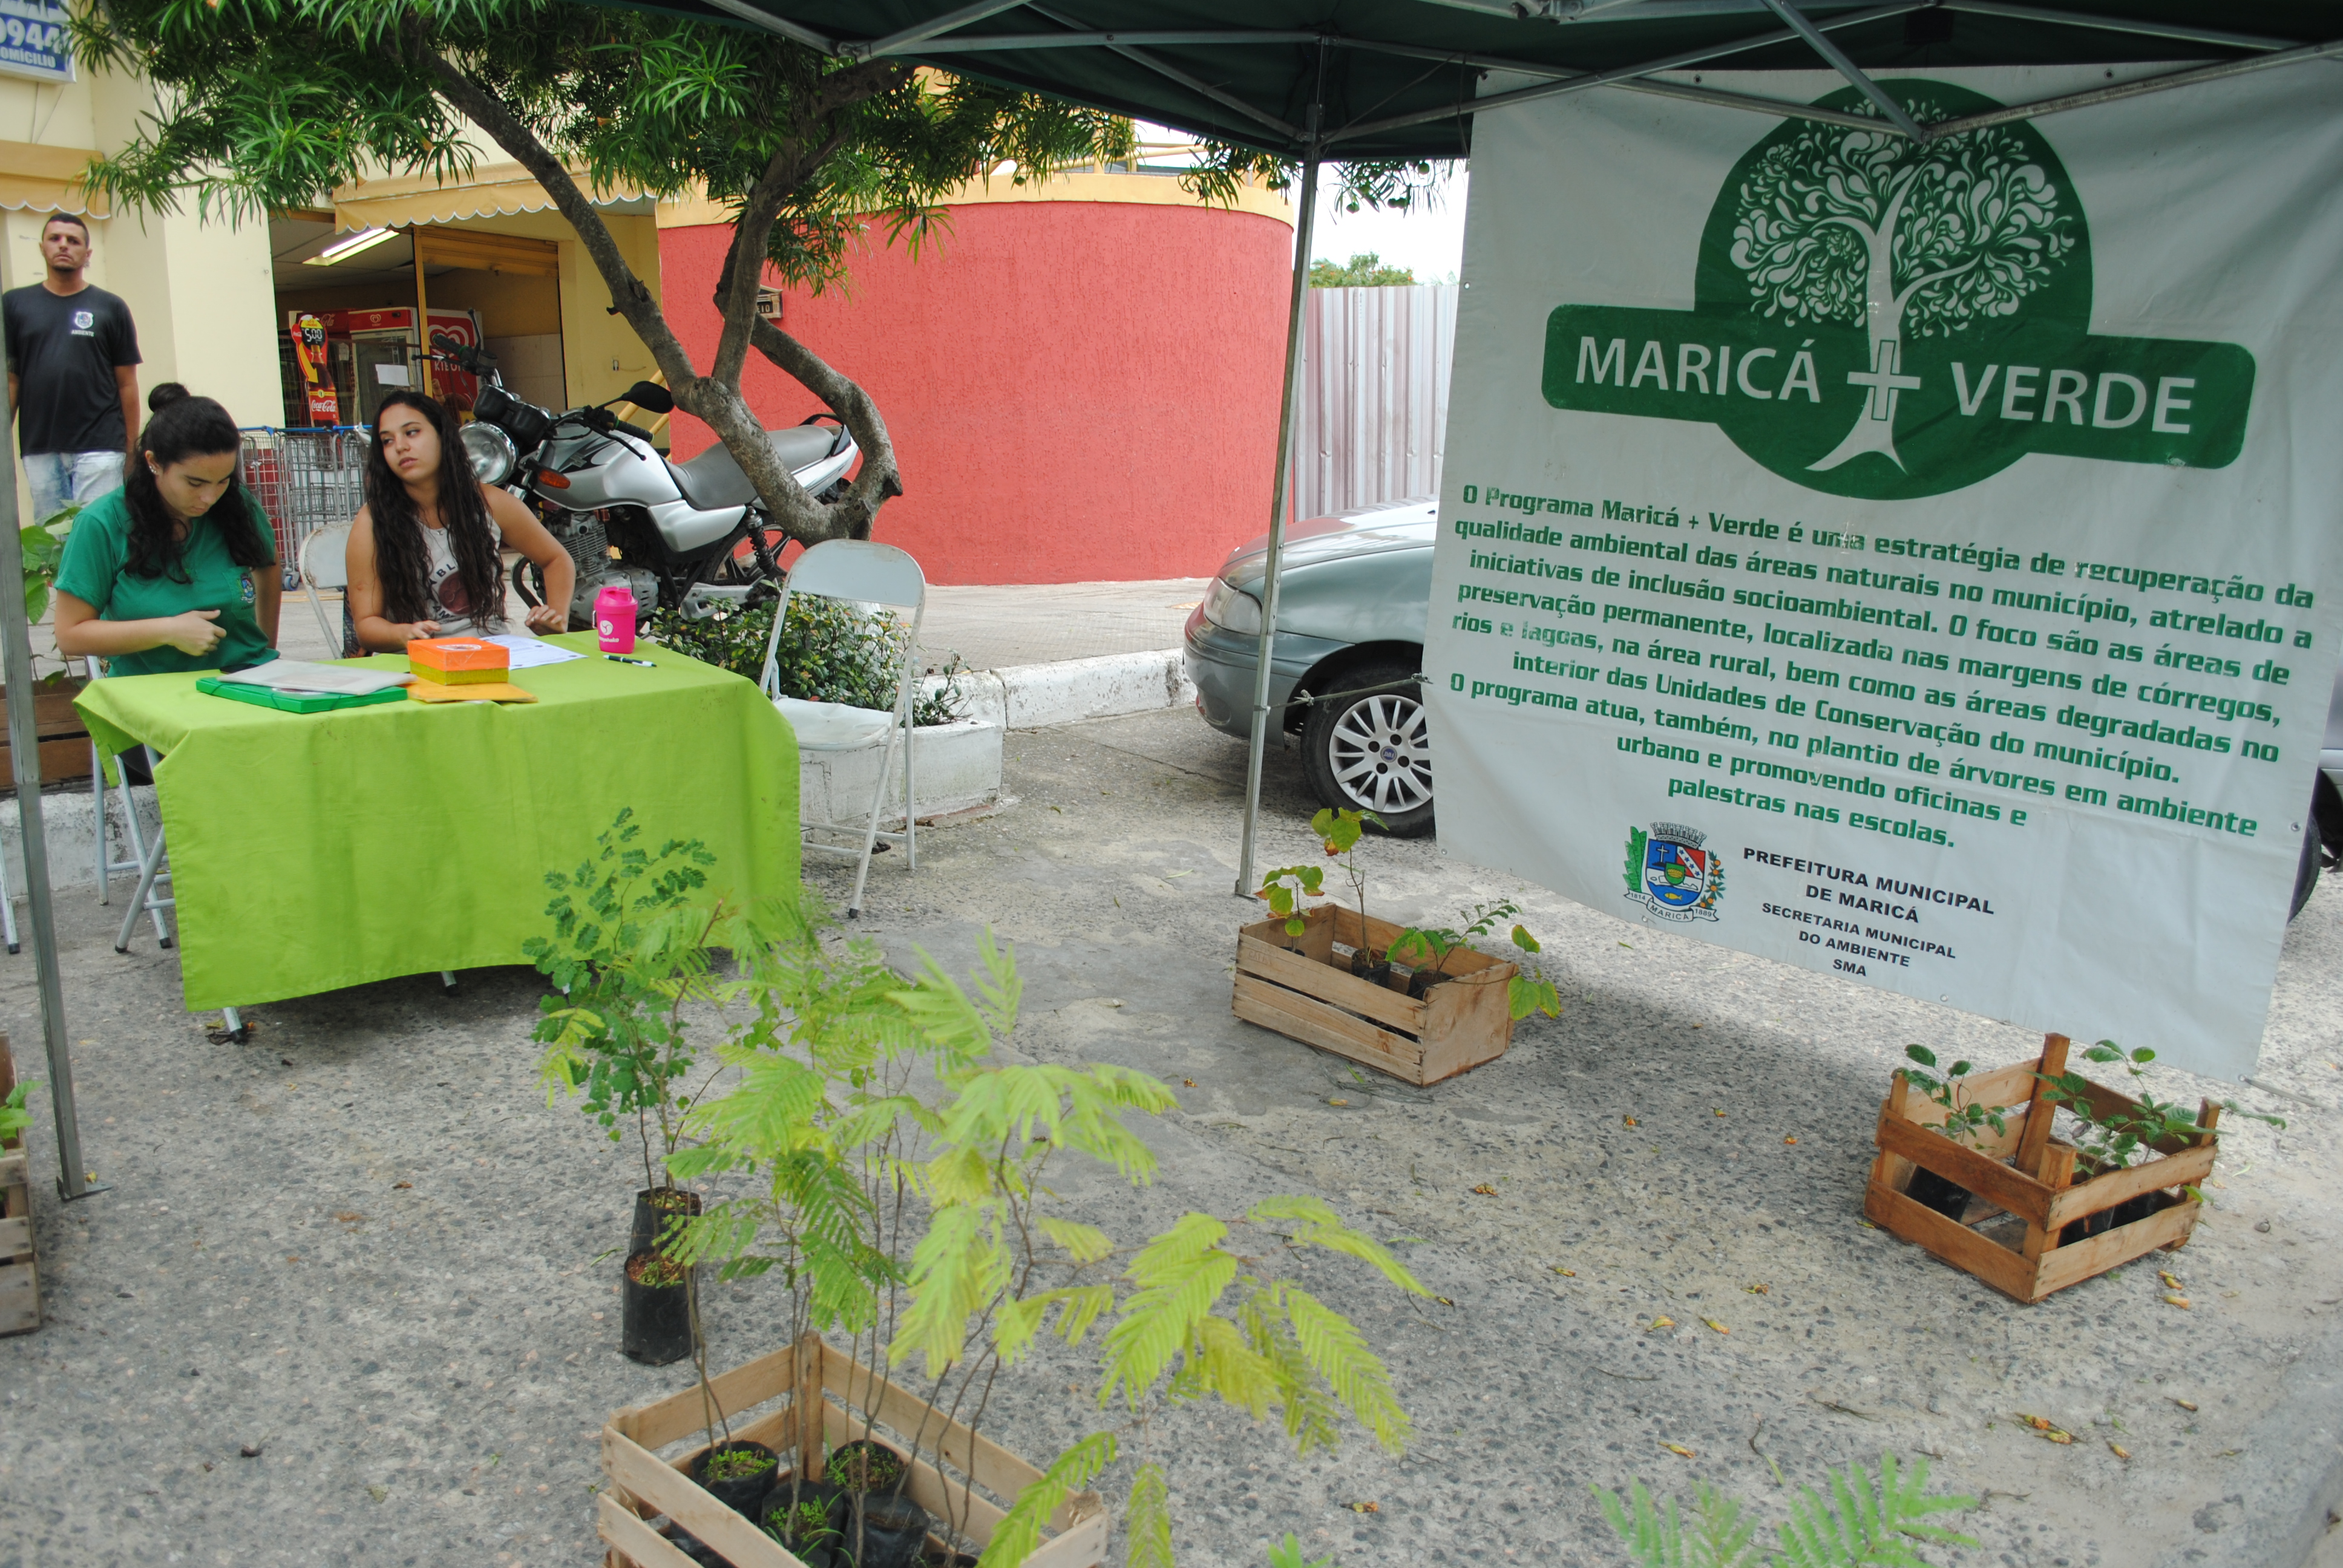 Maricá+Verde distribui 70 mudas em Ponta Grossa | Prefeitura de Maricá